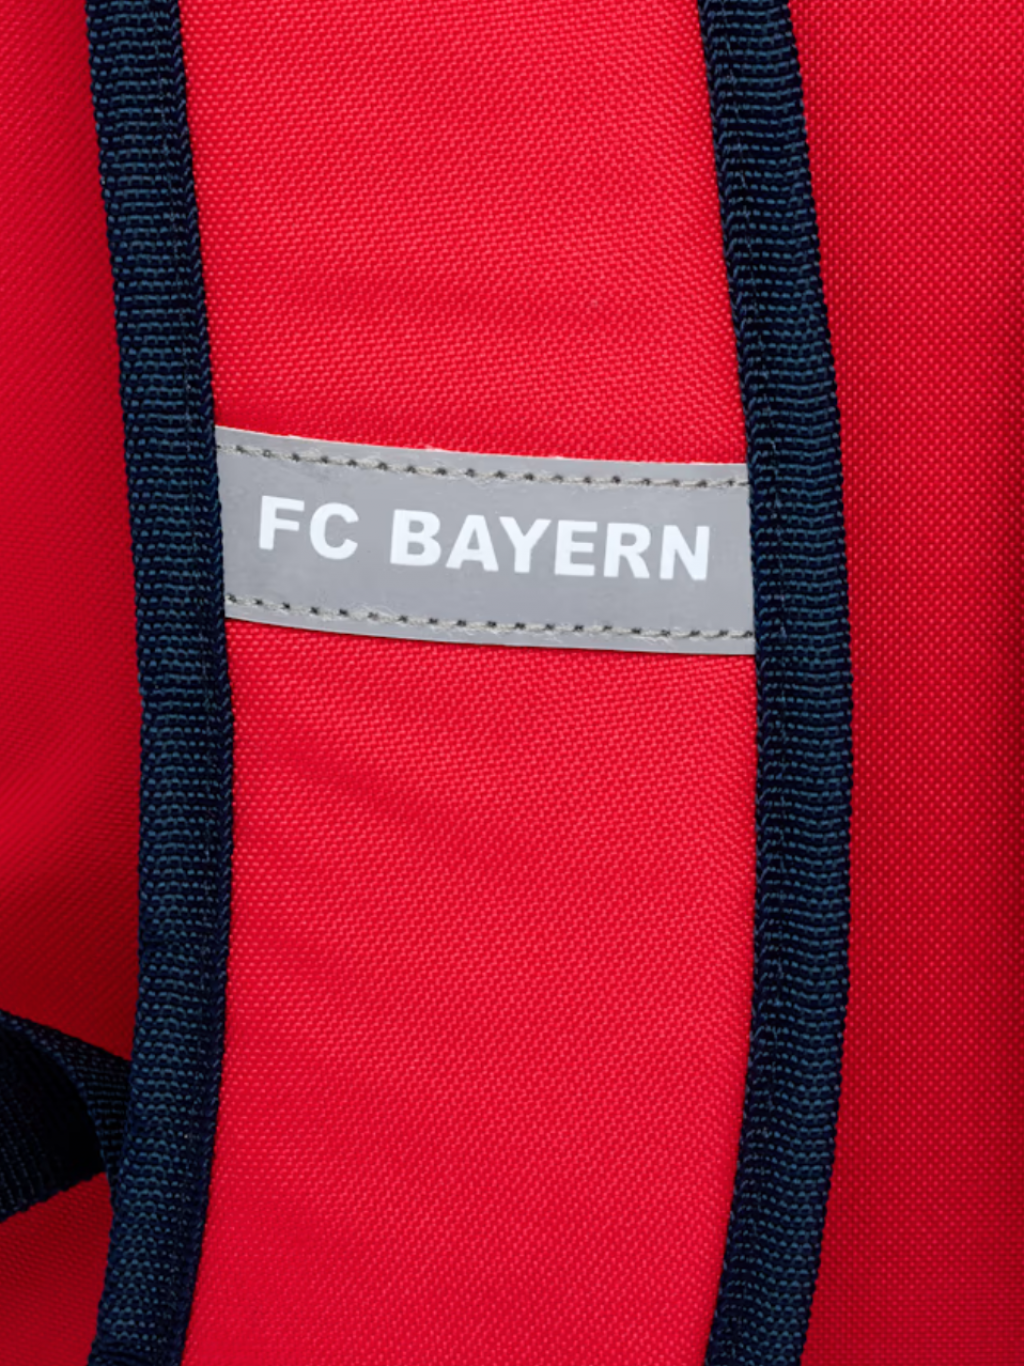 Studentský batoh FC Bayern München, červený